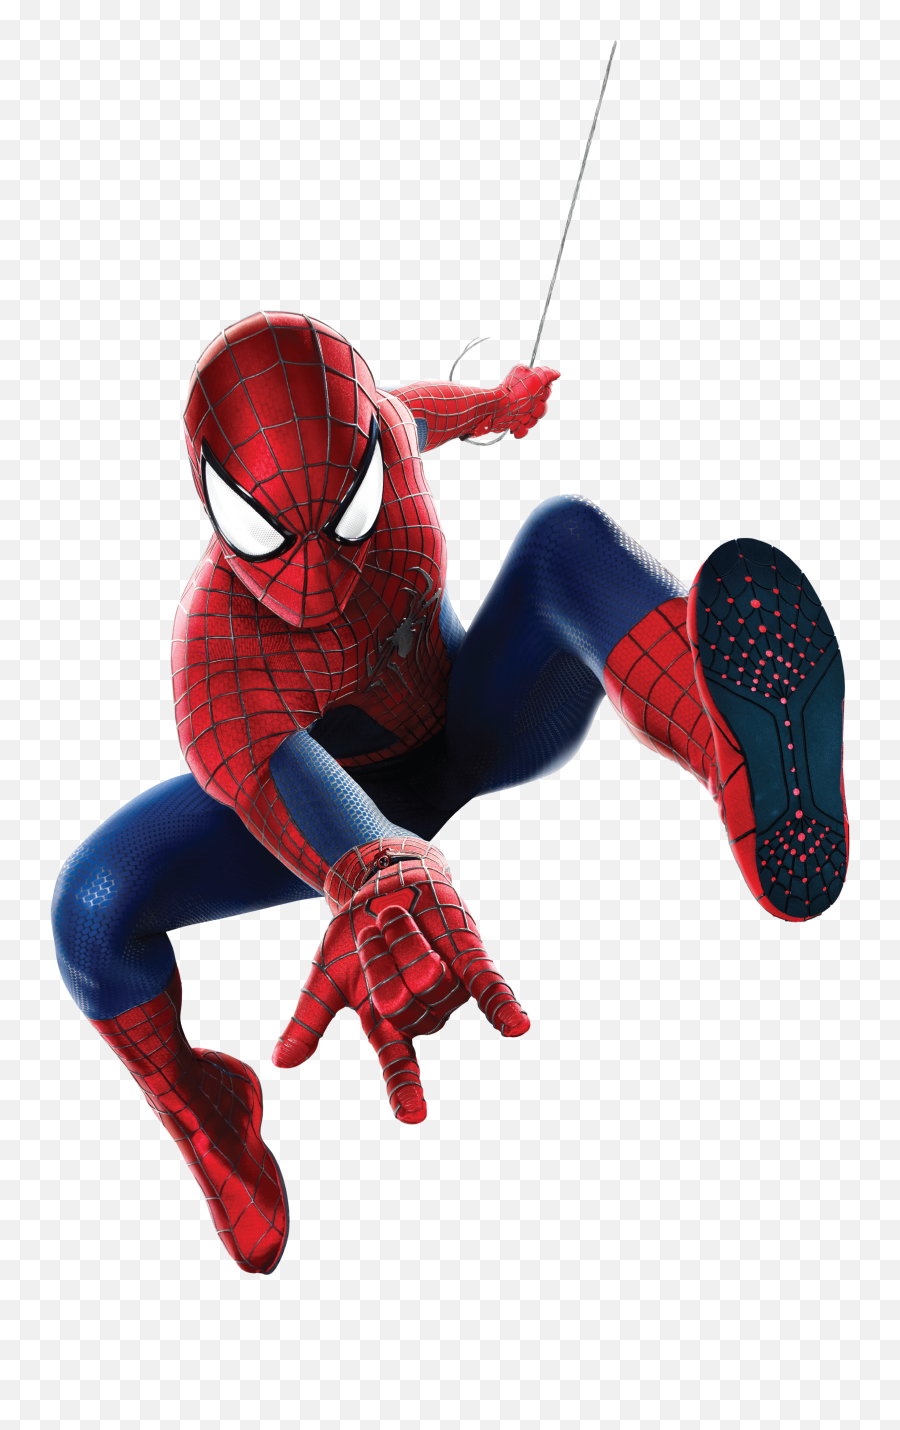 Free Png Spider Man - Konfest Spiderman Toys For Kids,Spider Man Png